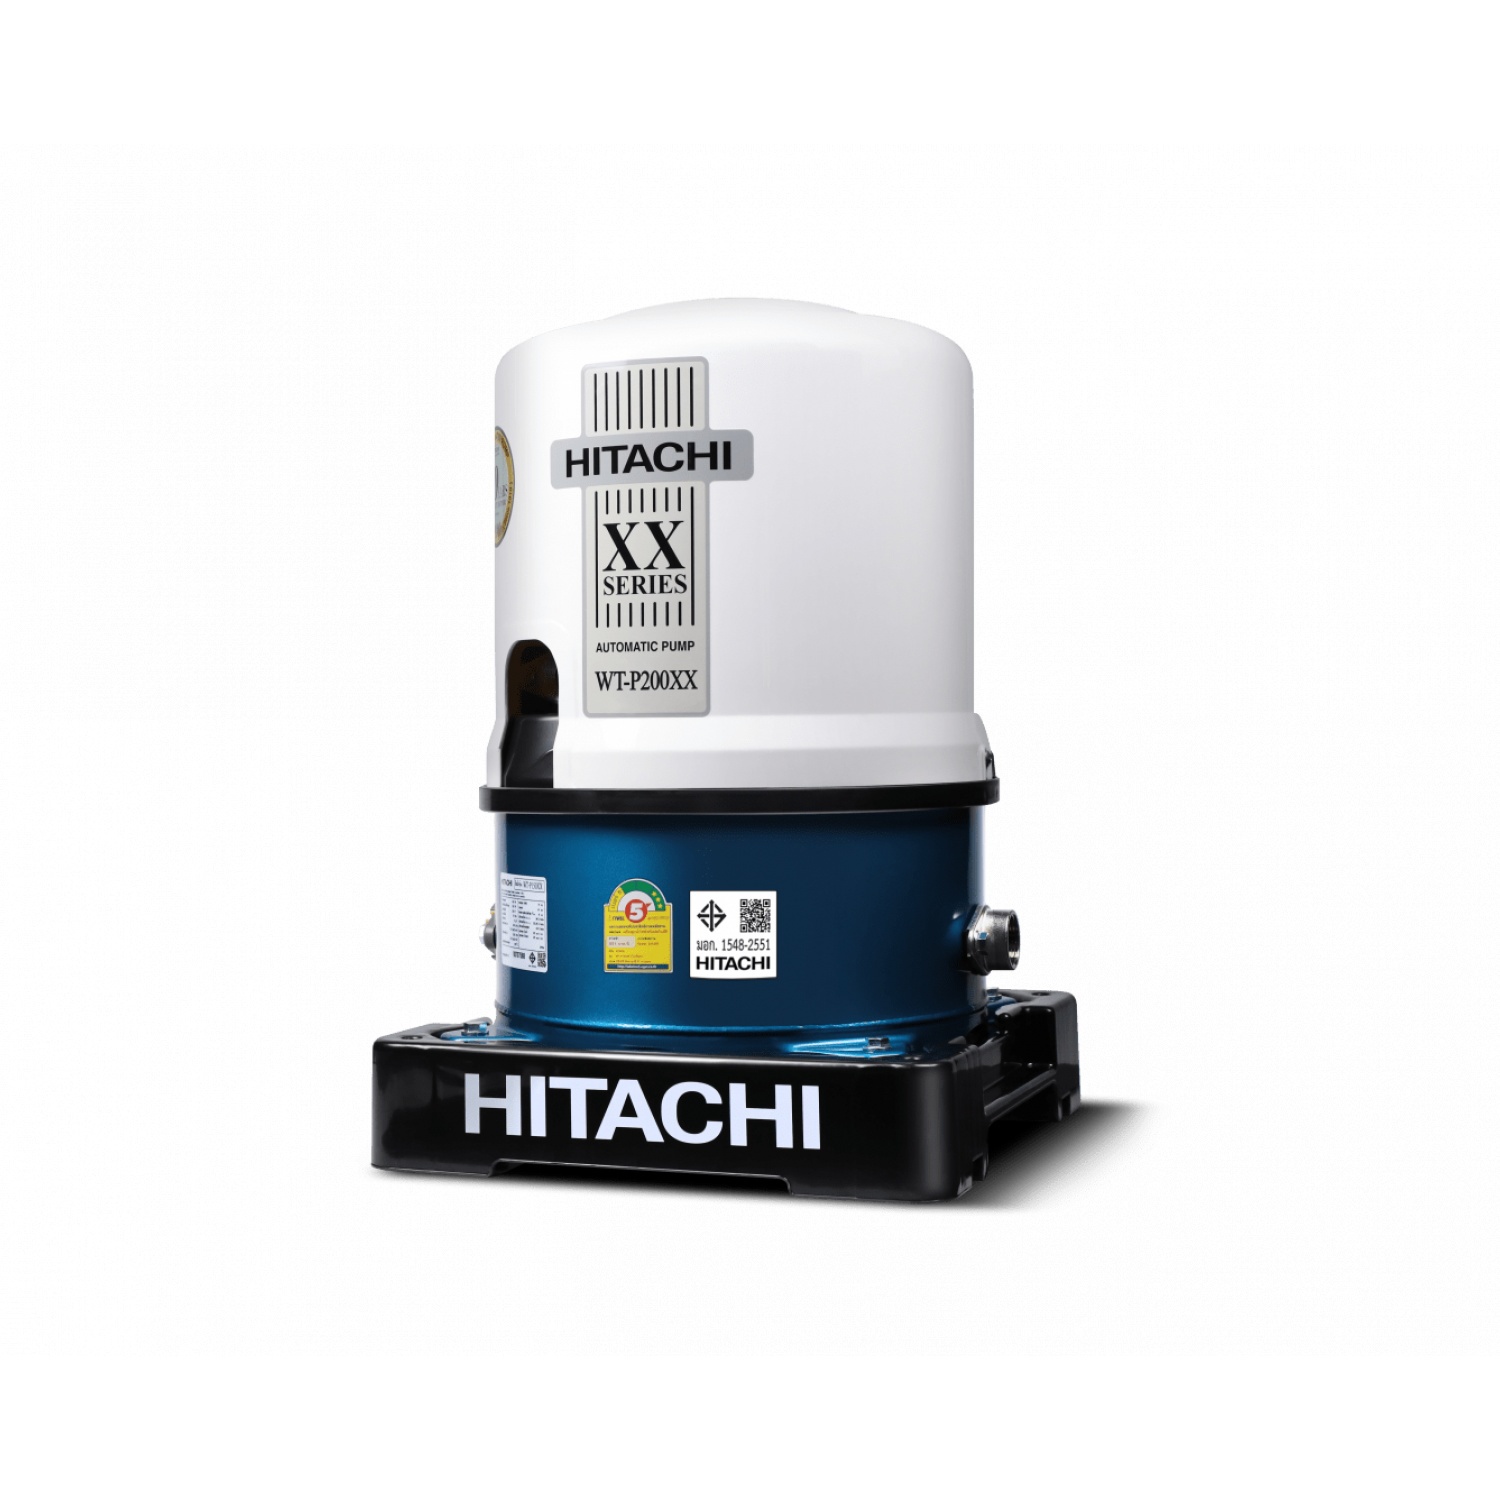 HITACHI ปั๊มน้ำอัตโนมัติ 200W รุ่น WT-P200XX